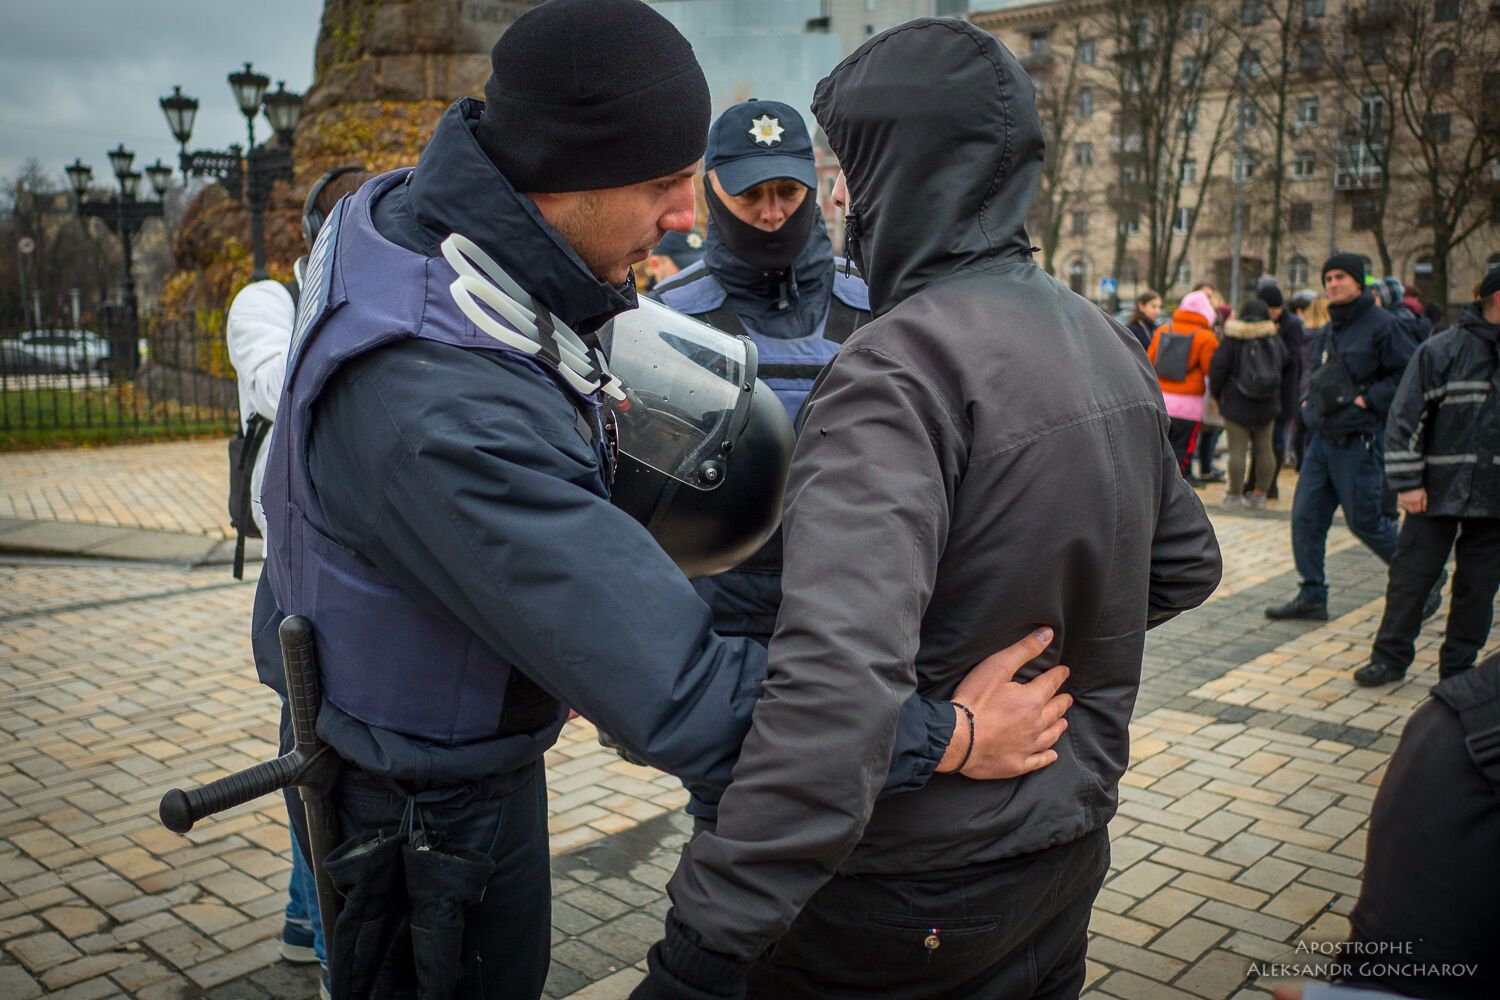 "Не вам выбирать, кто я": в Киеве состоялся марш против трансфобии